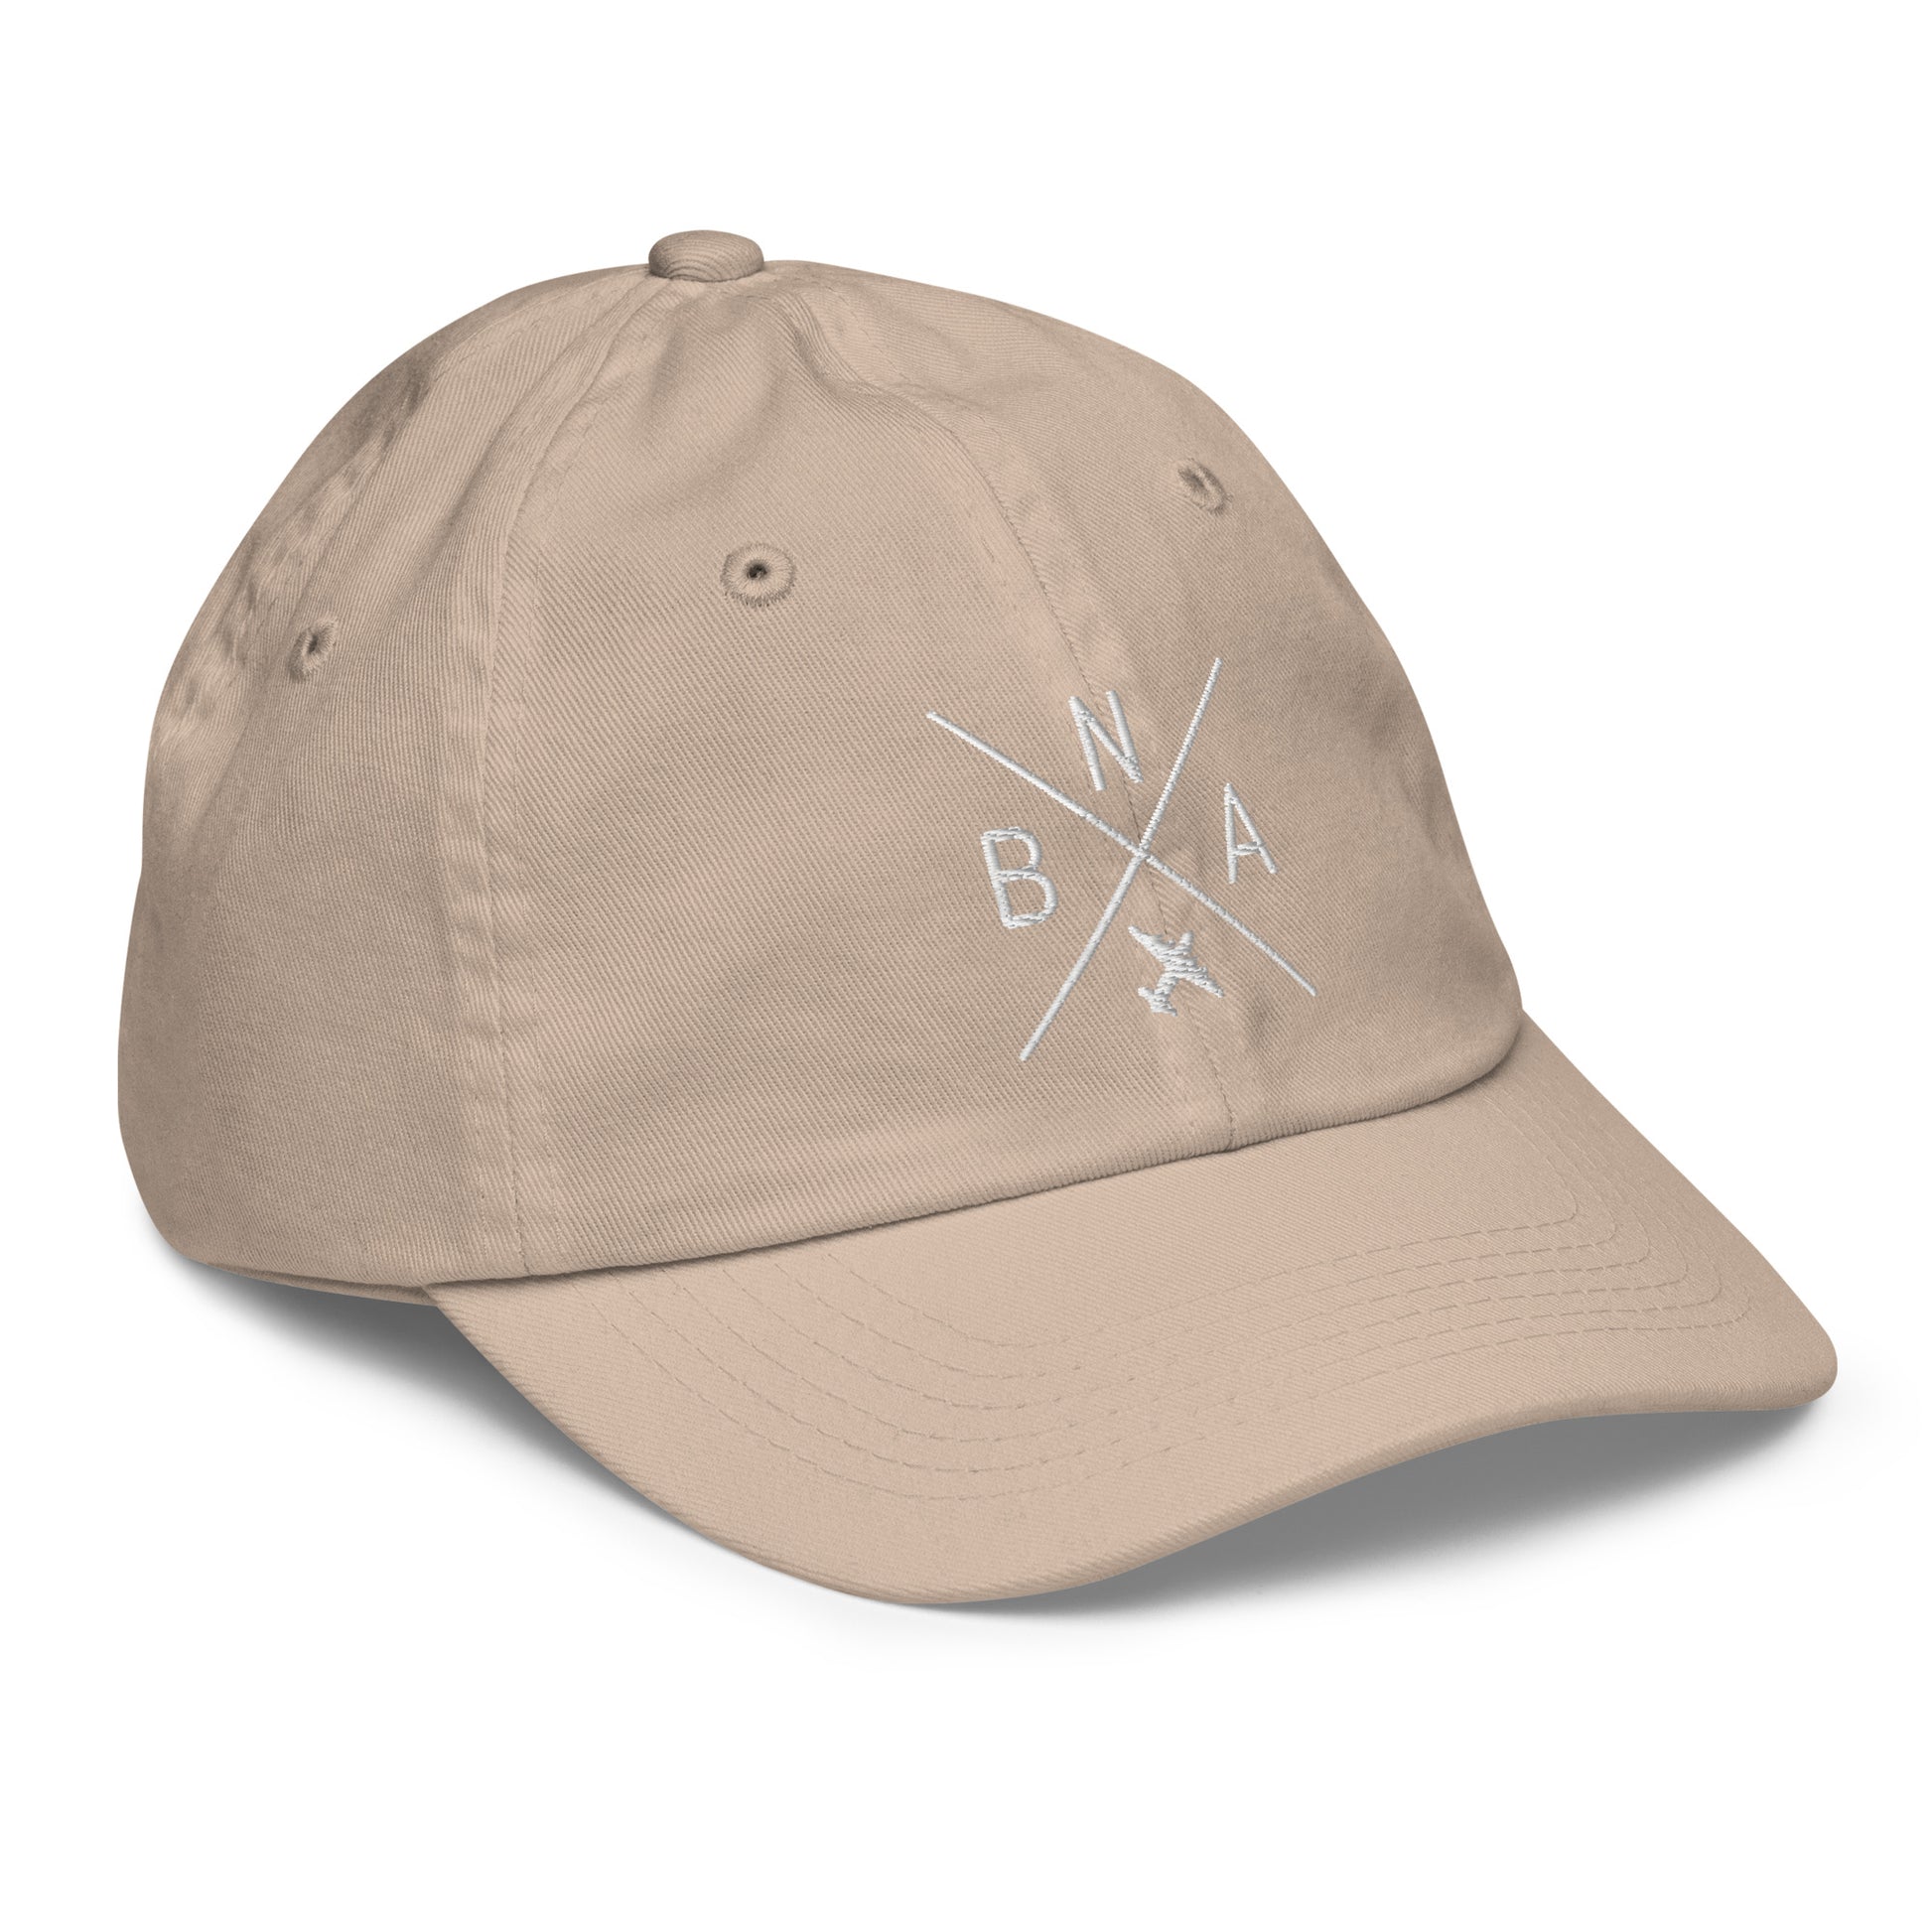 Crossed-X Kid's Baseball Cap - White • BNA Nashville • YHM Designs - Image 29